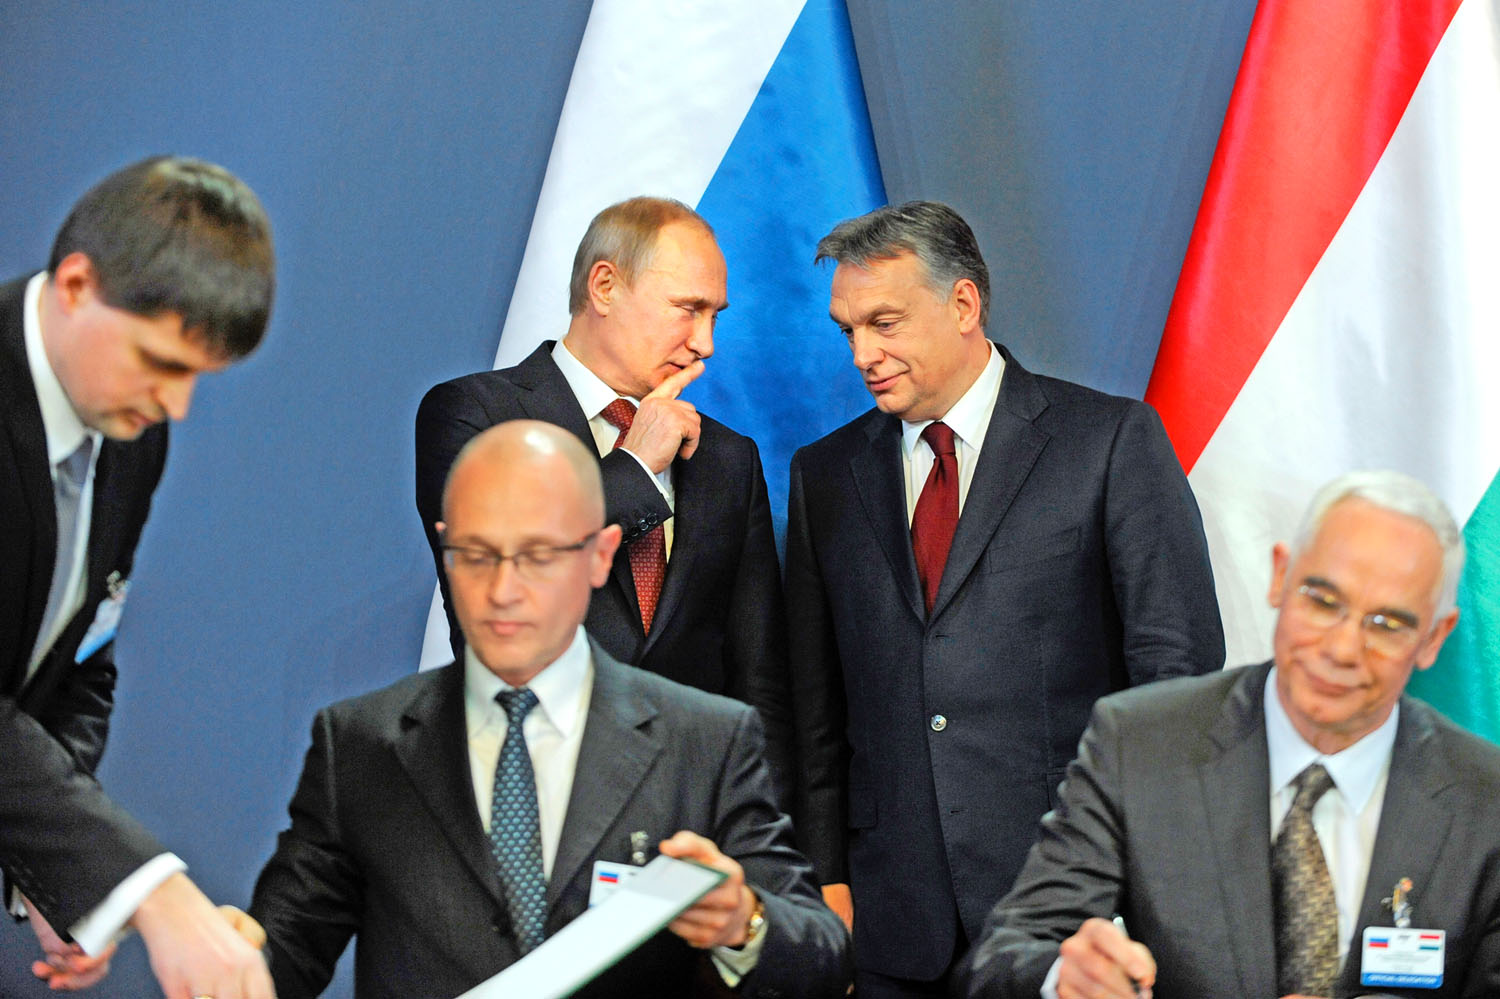 Szergej Kirijenko Roszatom-vezér és Balog Zoltán miniszter aláír, Vlagyimir Putyin és Orbán Viktor egyeztet